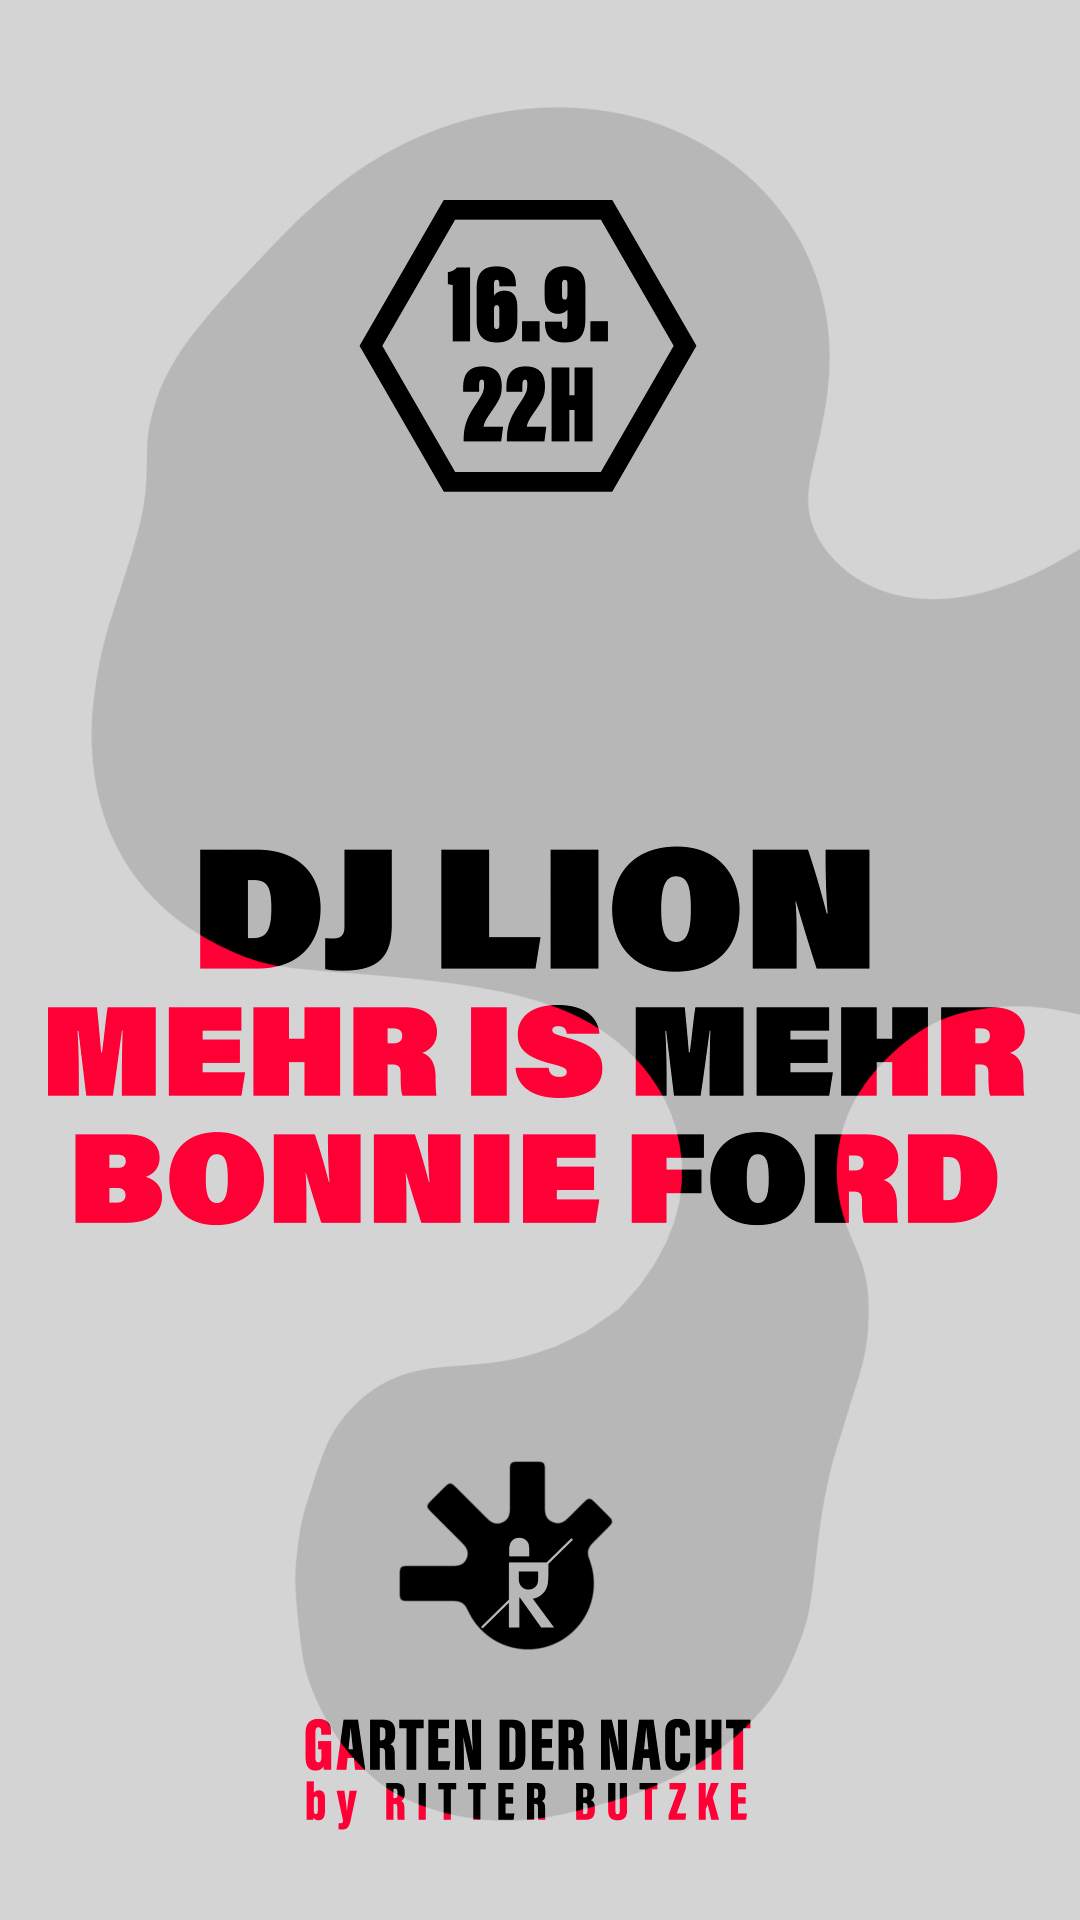 DJ Lion, Mehr is Mehr & Bonnie Ford at Garten der Nacht - フライヤー裏